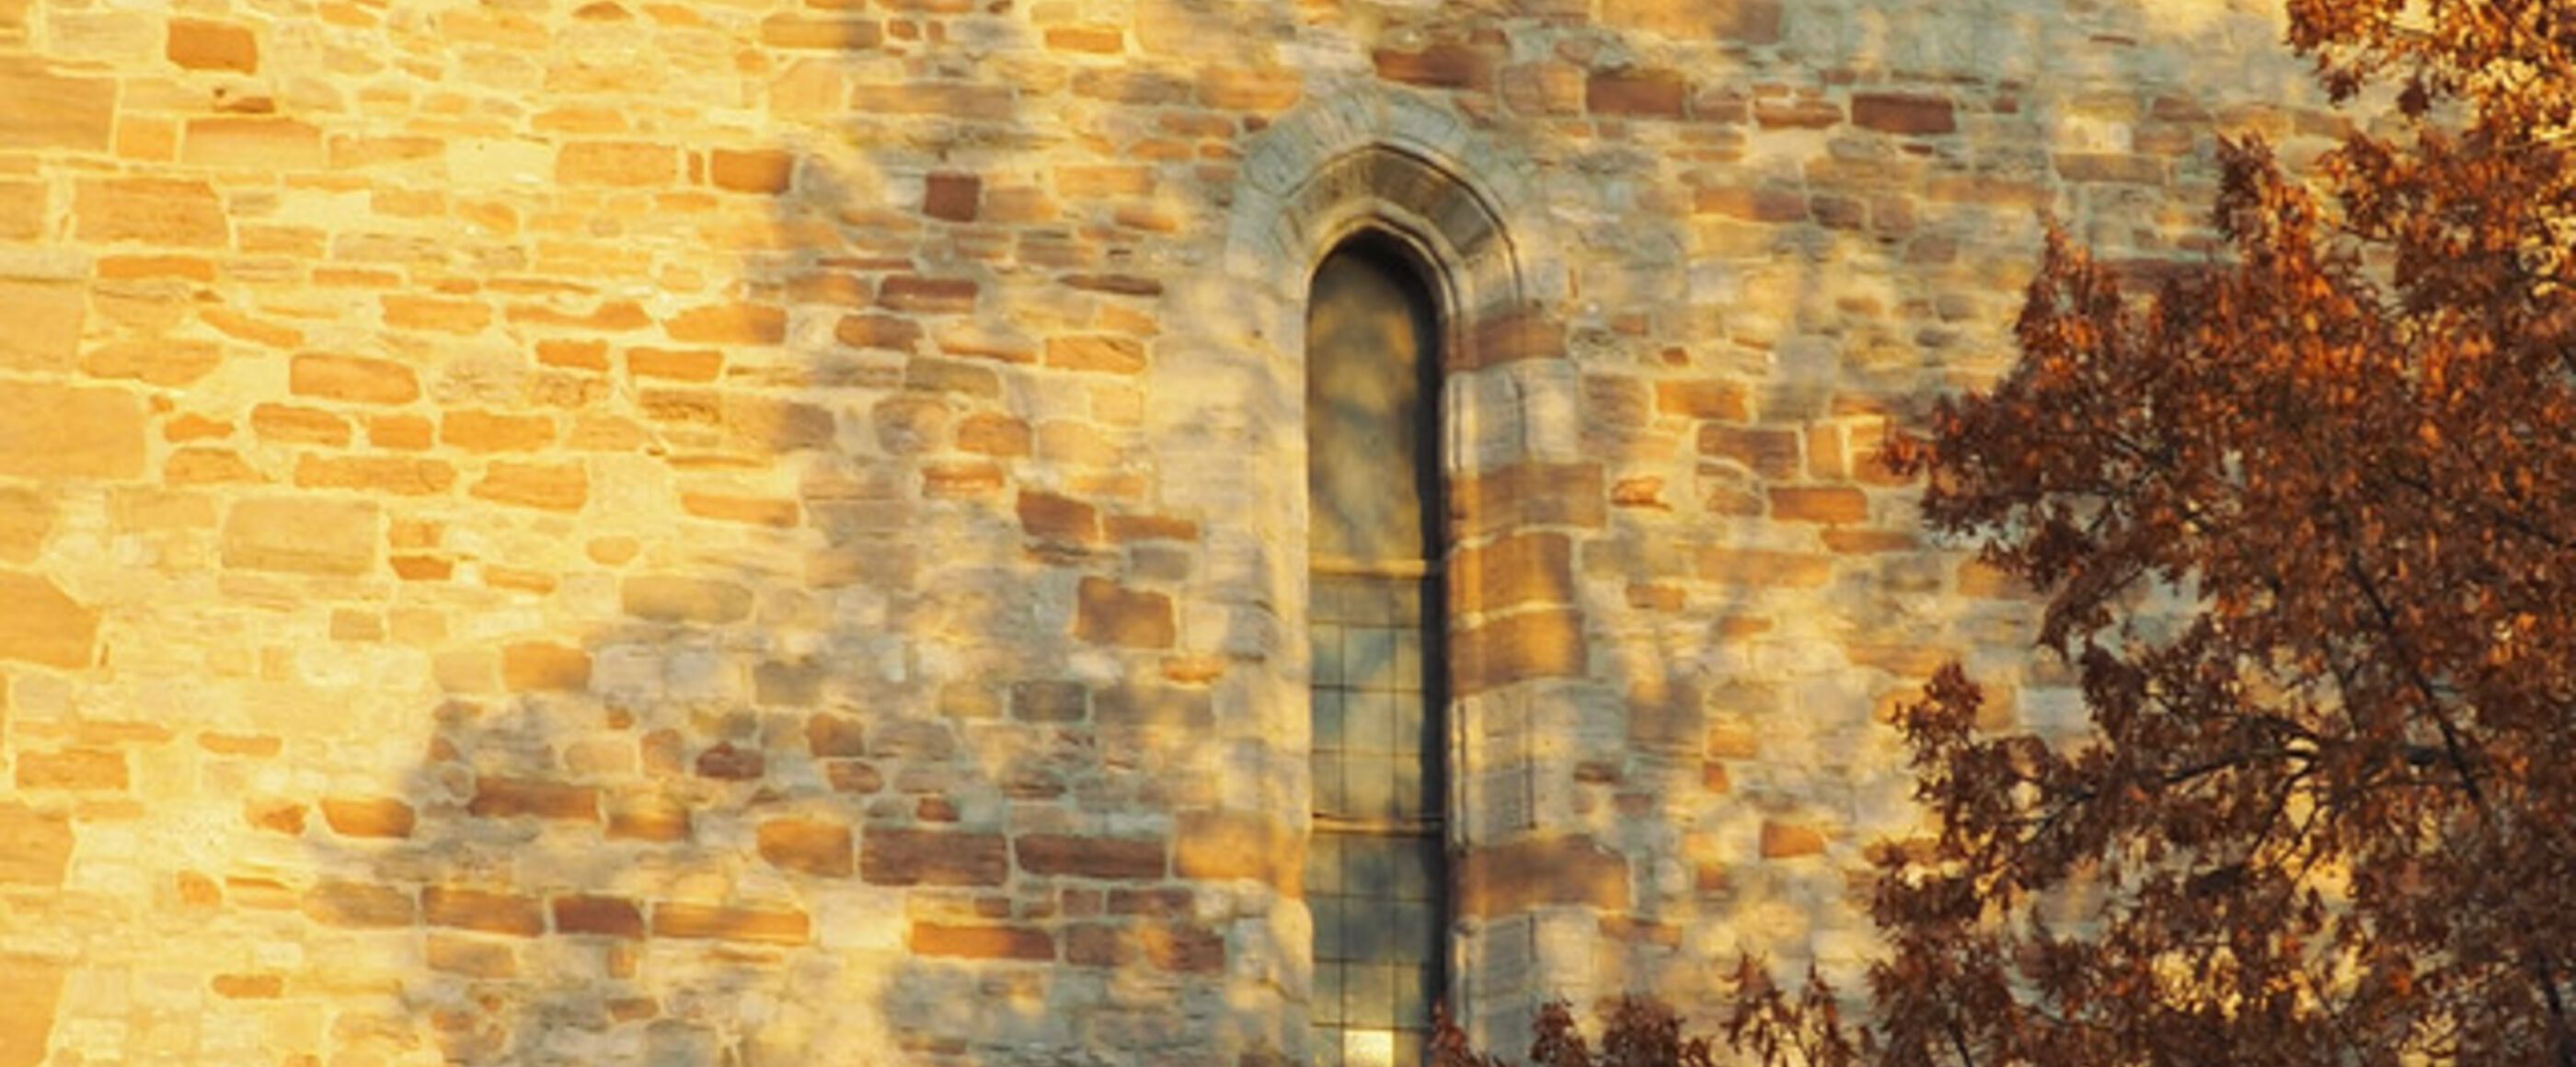 Eine Kirchenmauer mit einem kleinen Fenster. darüber liegt der Schatten eines Baumes, der vor der Kirche steht. Ein paar seiner Äste sind rechts im Bild noch zu sehen.